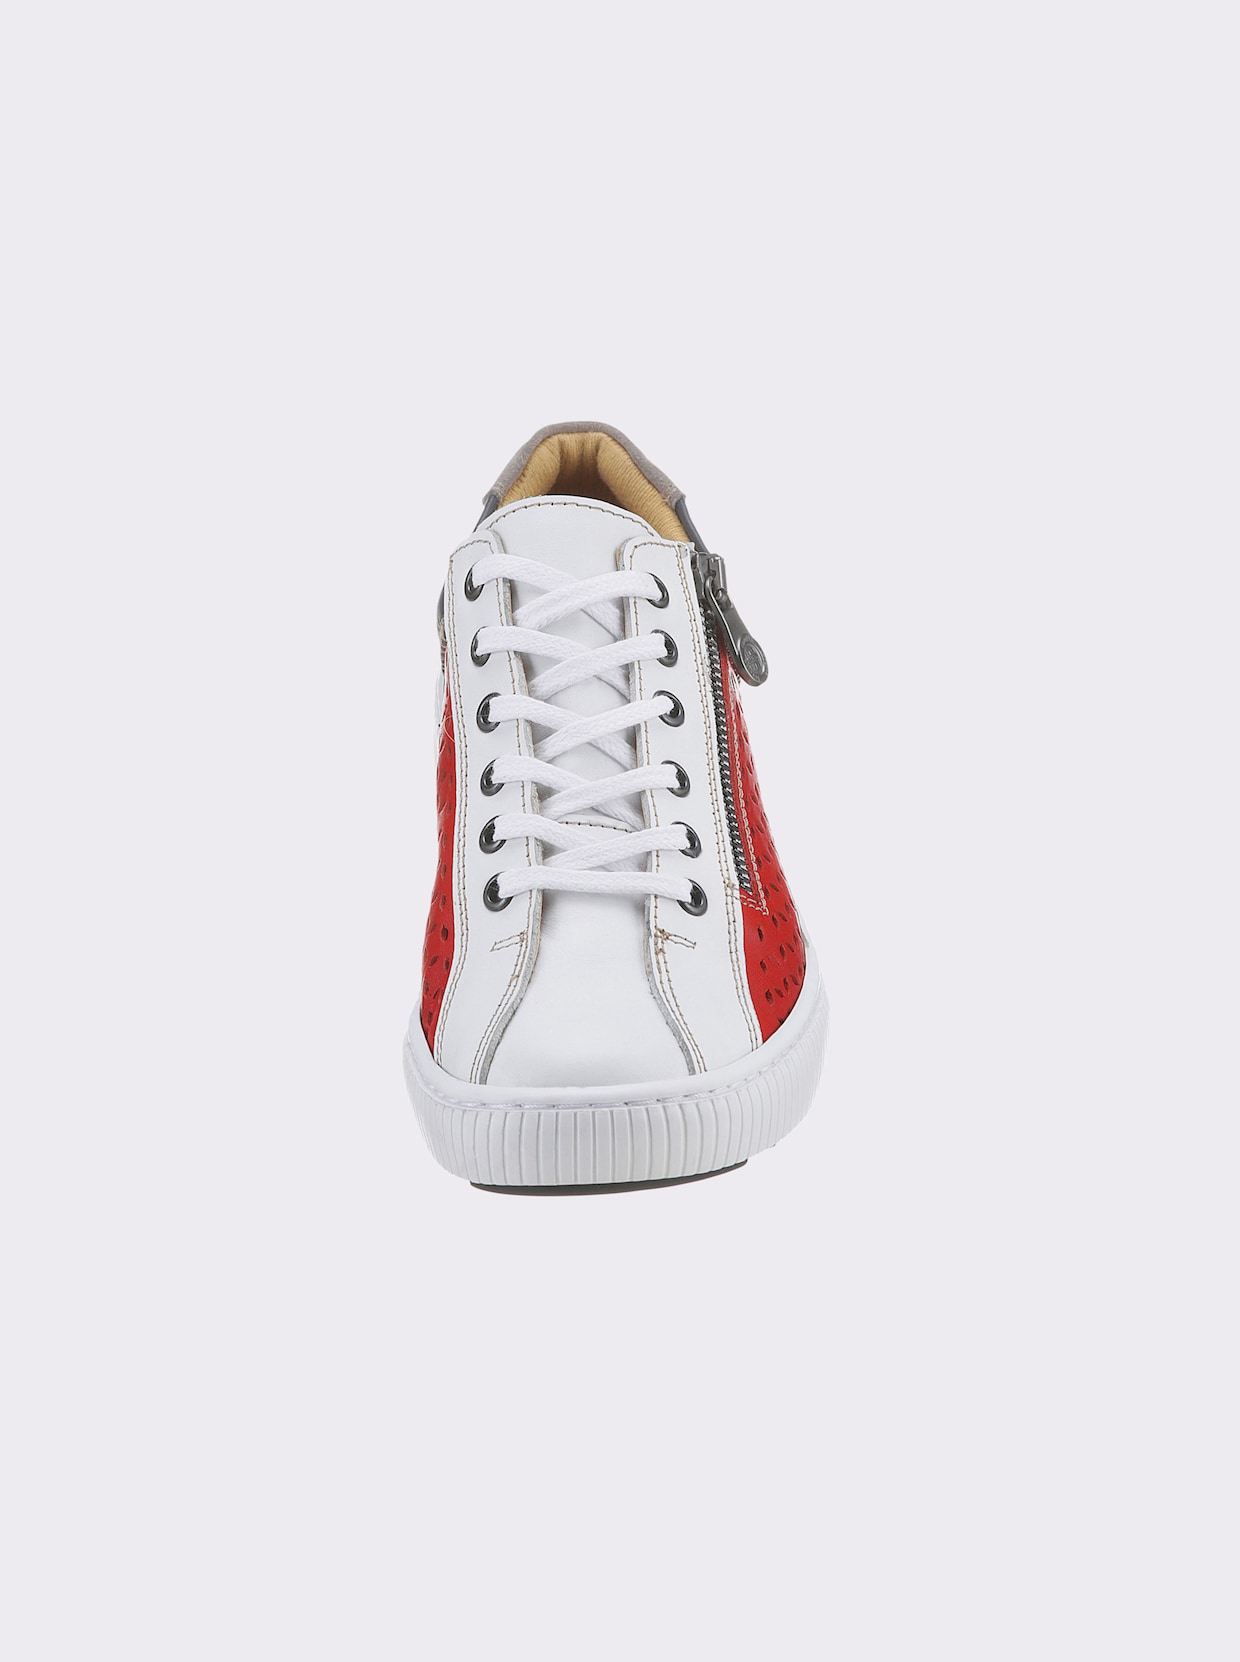 airsoft modern+ Sneaker - wit/marine